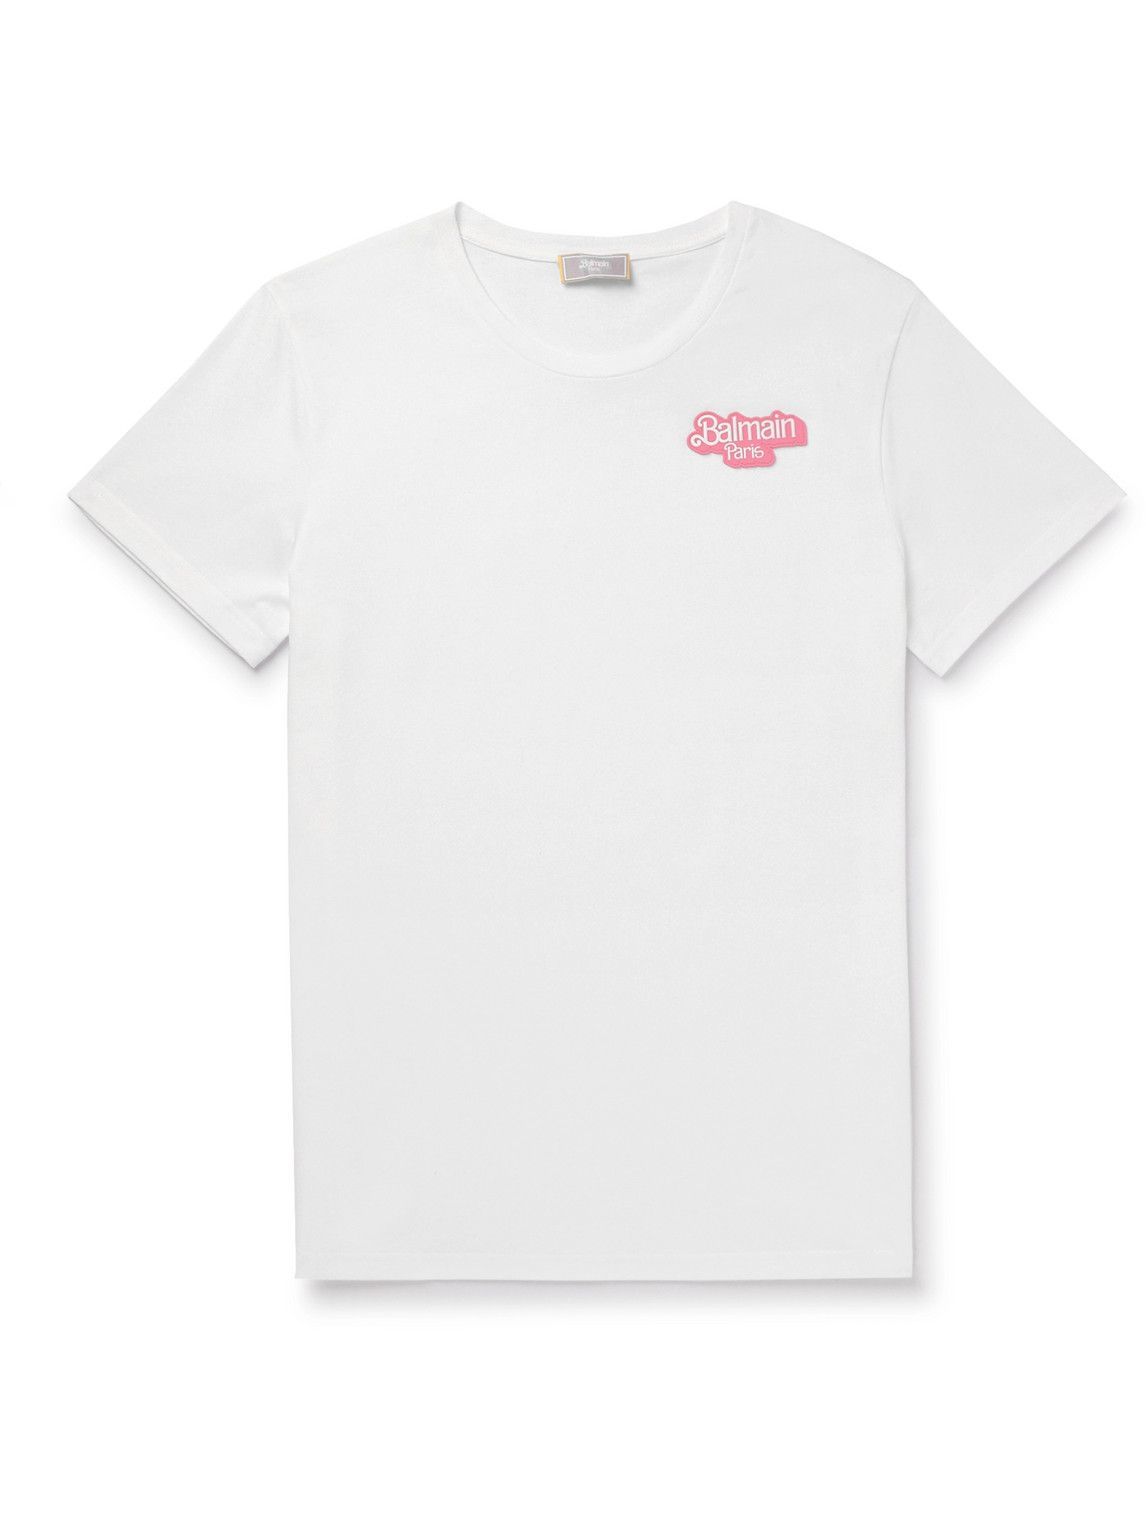 Balmain - Barbie Logo-Appliquéd Cotton-Jersey T-Shirt - White Balmain